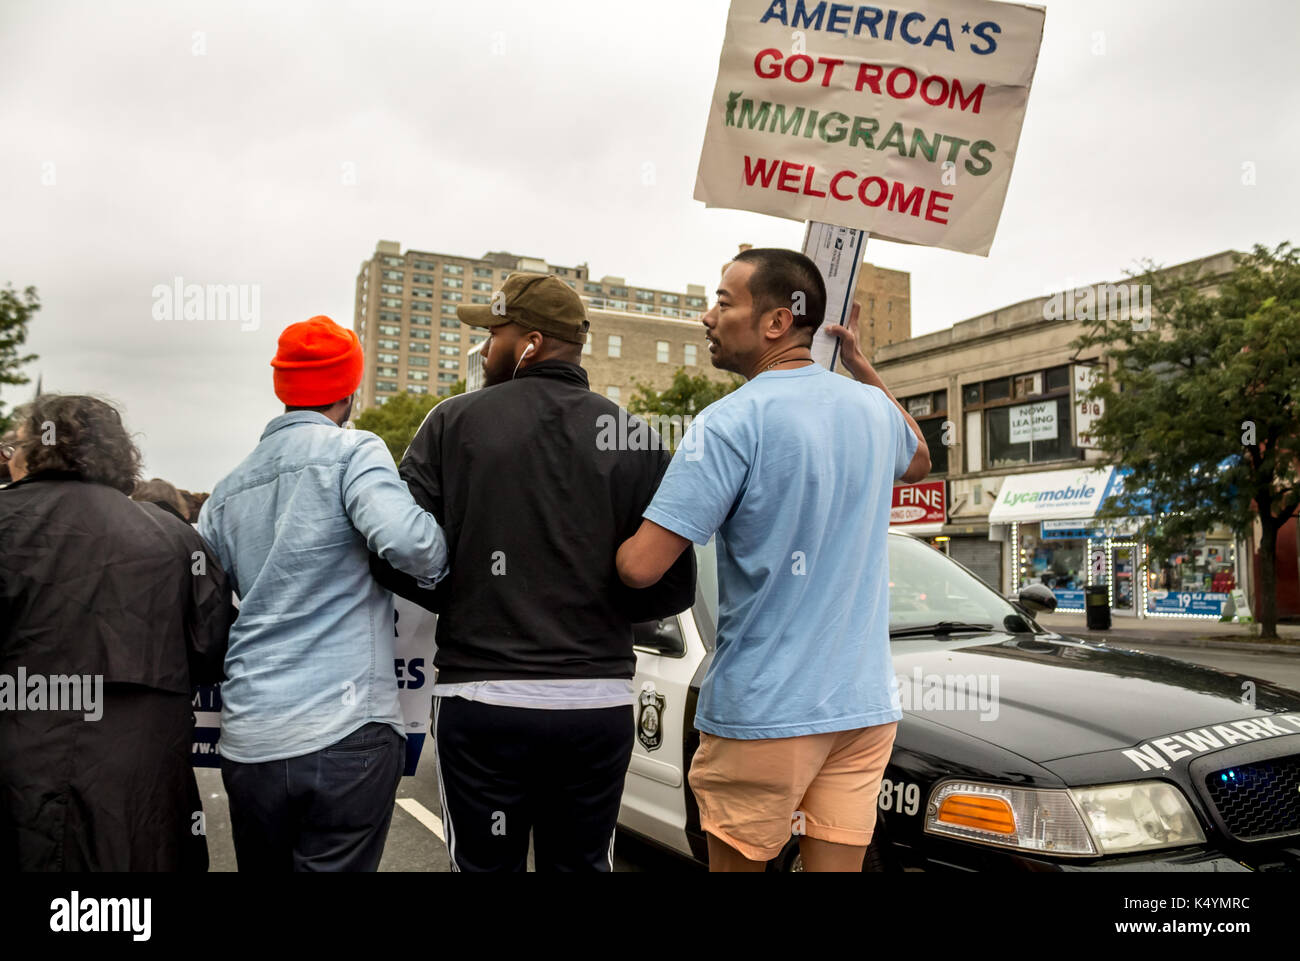 Newark, États-Unis. 6 septembre, 2017. Les immigrants et leurs partisans dans la rue pour protester contre la destitution du président Donald Trump de daca, une ère obama une loi qui permet à ceux qui ont immigré en tant qu'enfants à demeurer aux États-Unis sur un visa spécial. près de 800 000 personnes sont sous la menace d'une déportation maintenant que daca a disparu. La plupart de ceux menacés d'expulsion sont des étudiants qui ont vécu à l'intérieur du pays pendant des années par la "loi des alésoirs. mack william regan / alamy live news Banque D'Images